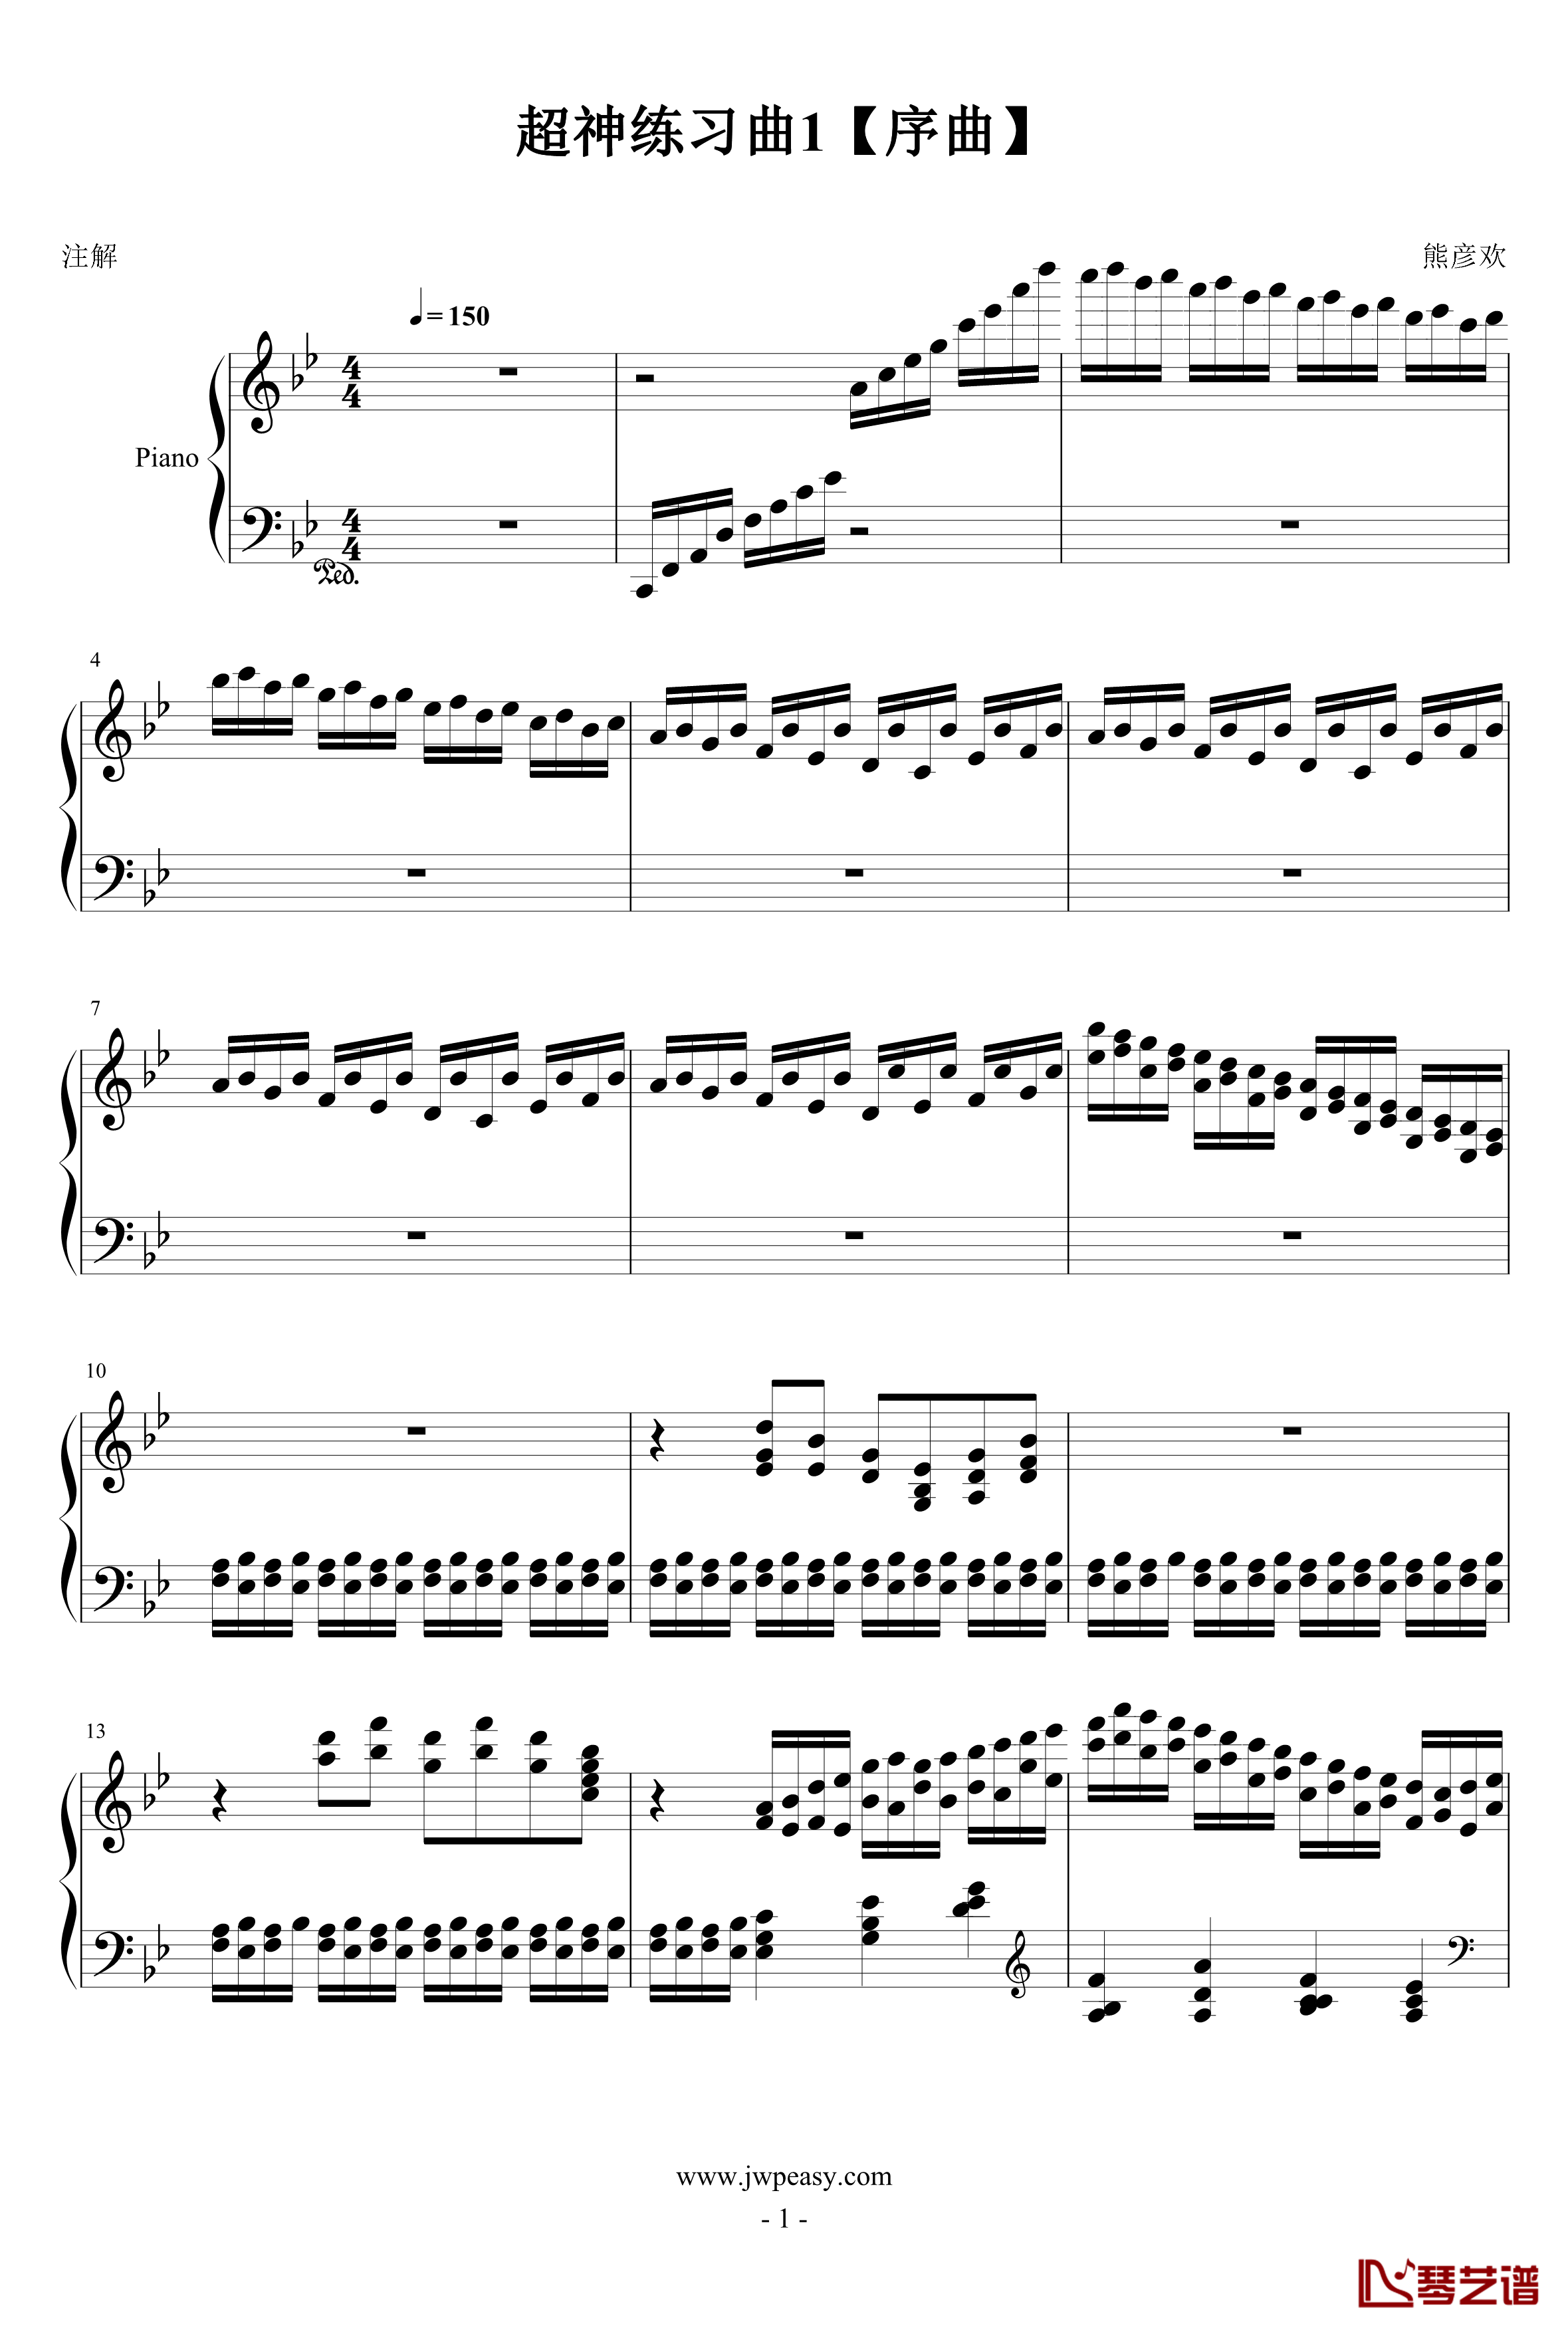 超神练习曲一号序曲钢琴谱-熊哥Herobrine1